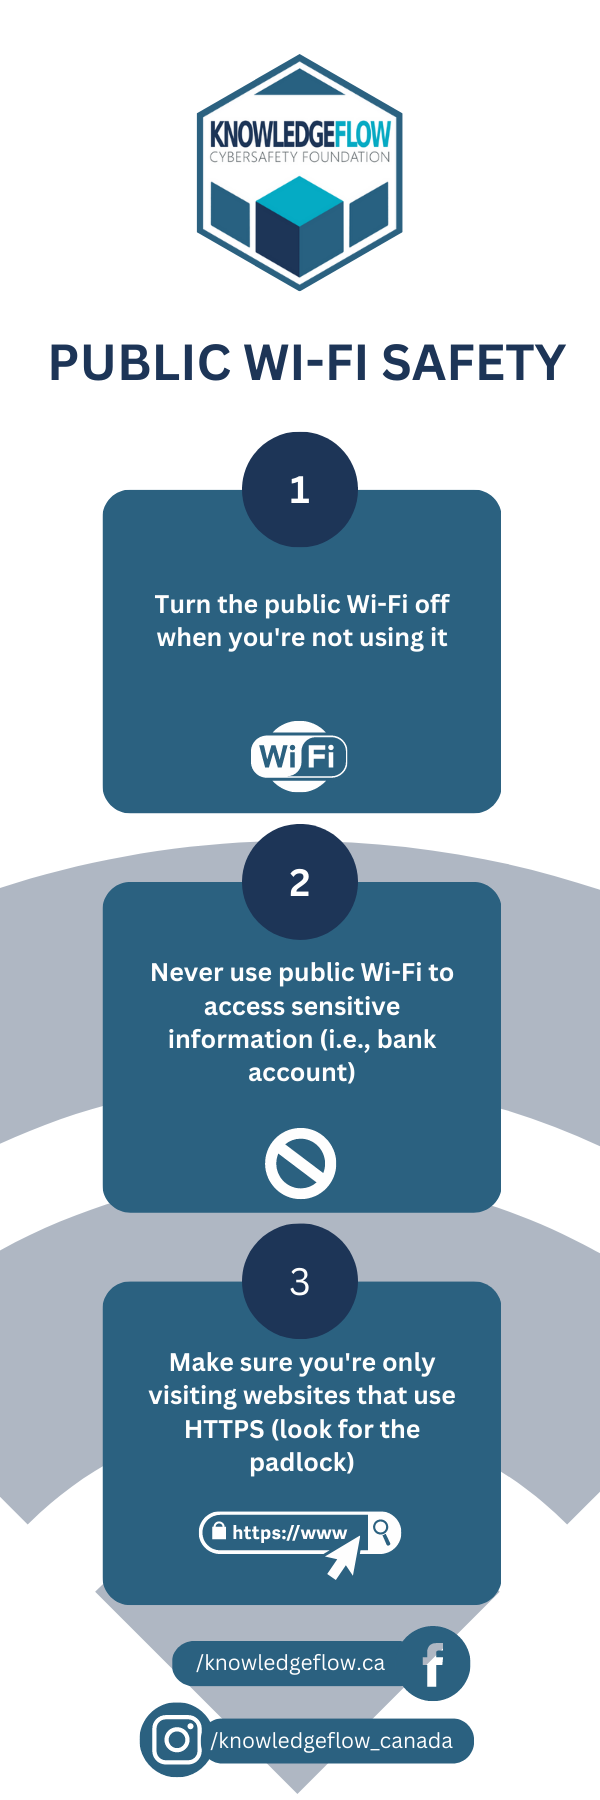 додати в закладки безпеку громадського Wi-Fi